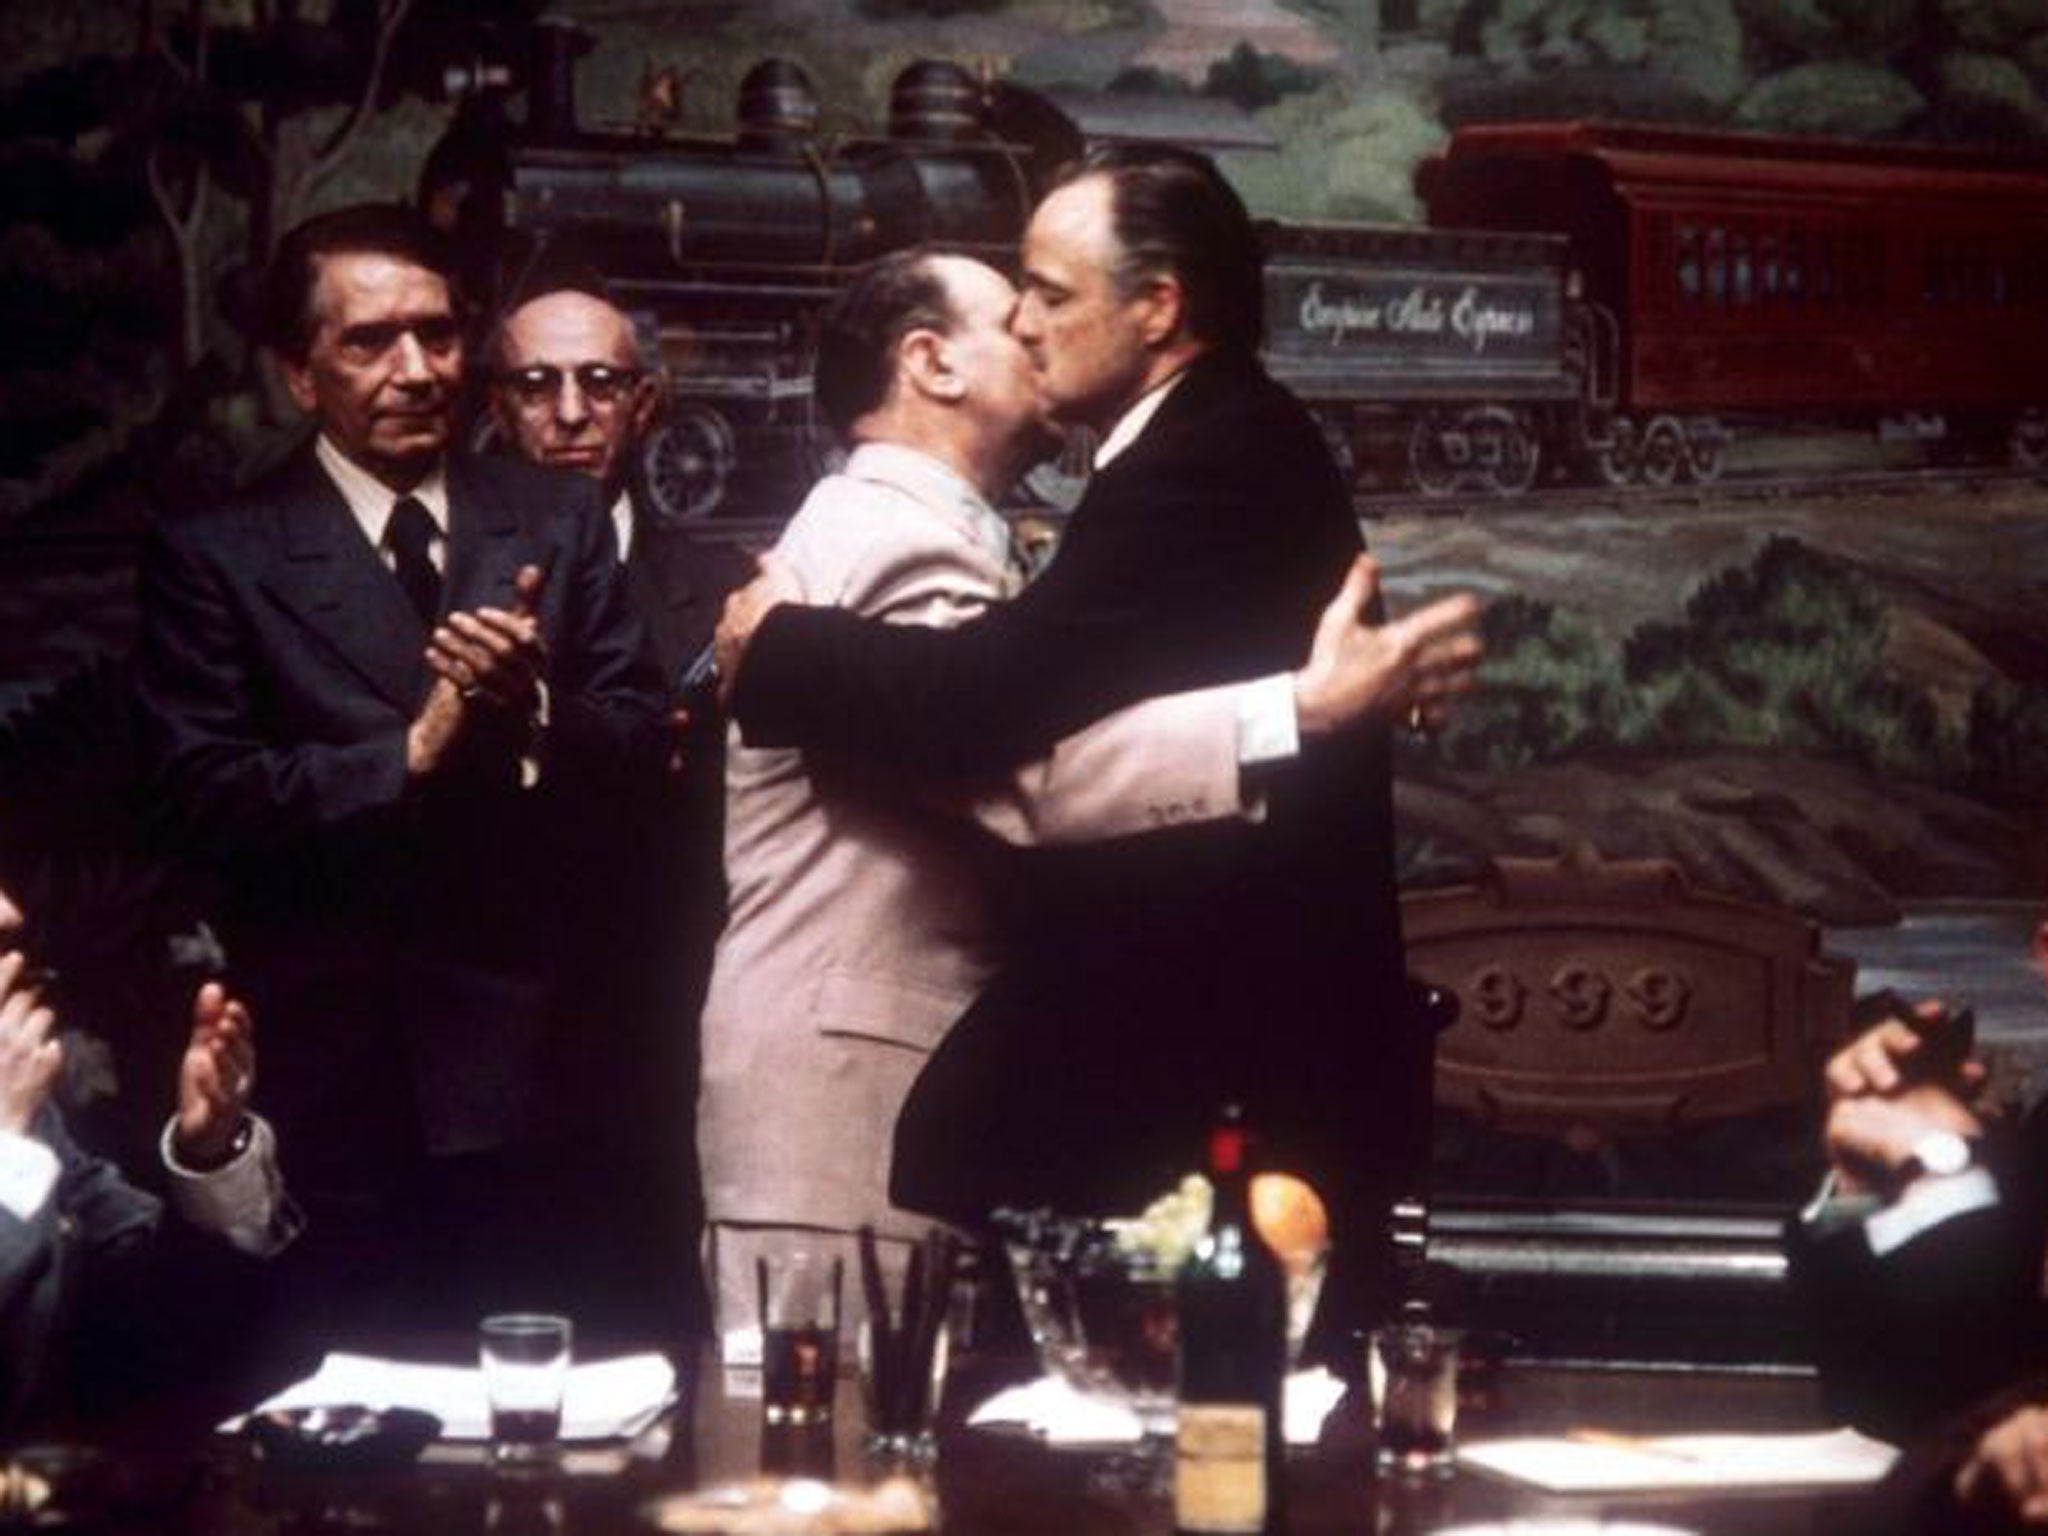 Table talk: A mafia pact, as Marlon Brando ends a vendetta in The Godfather